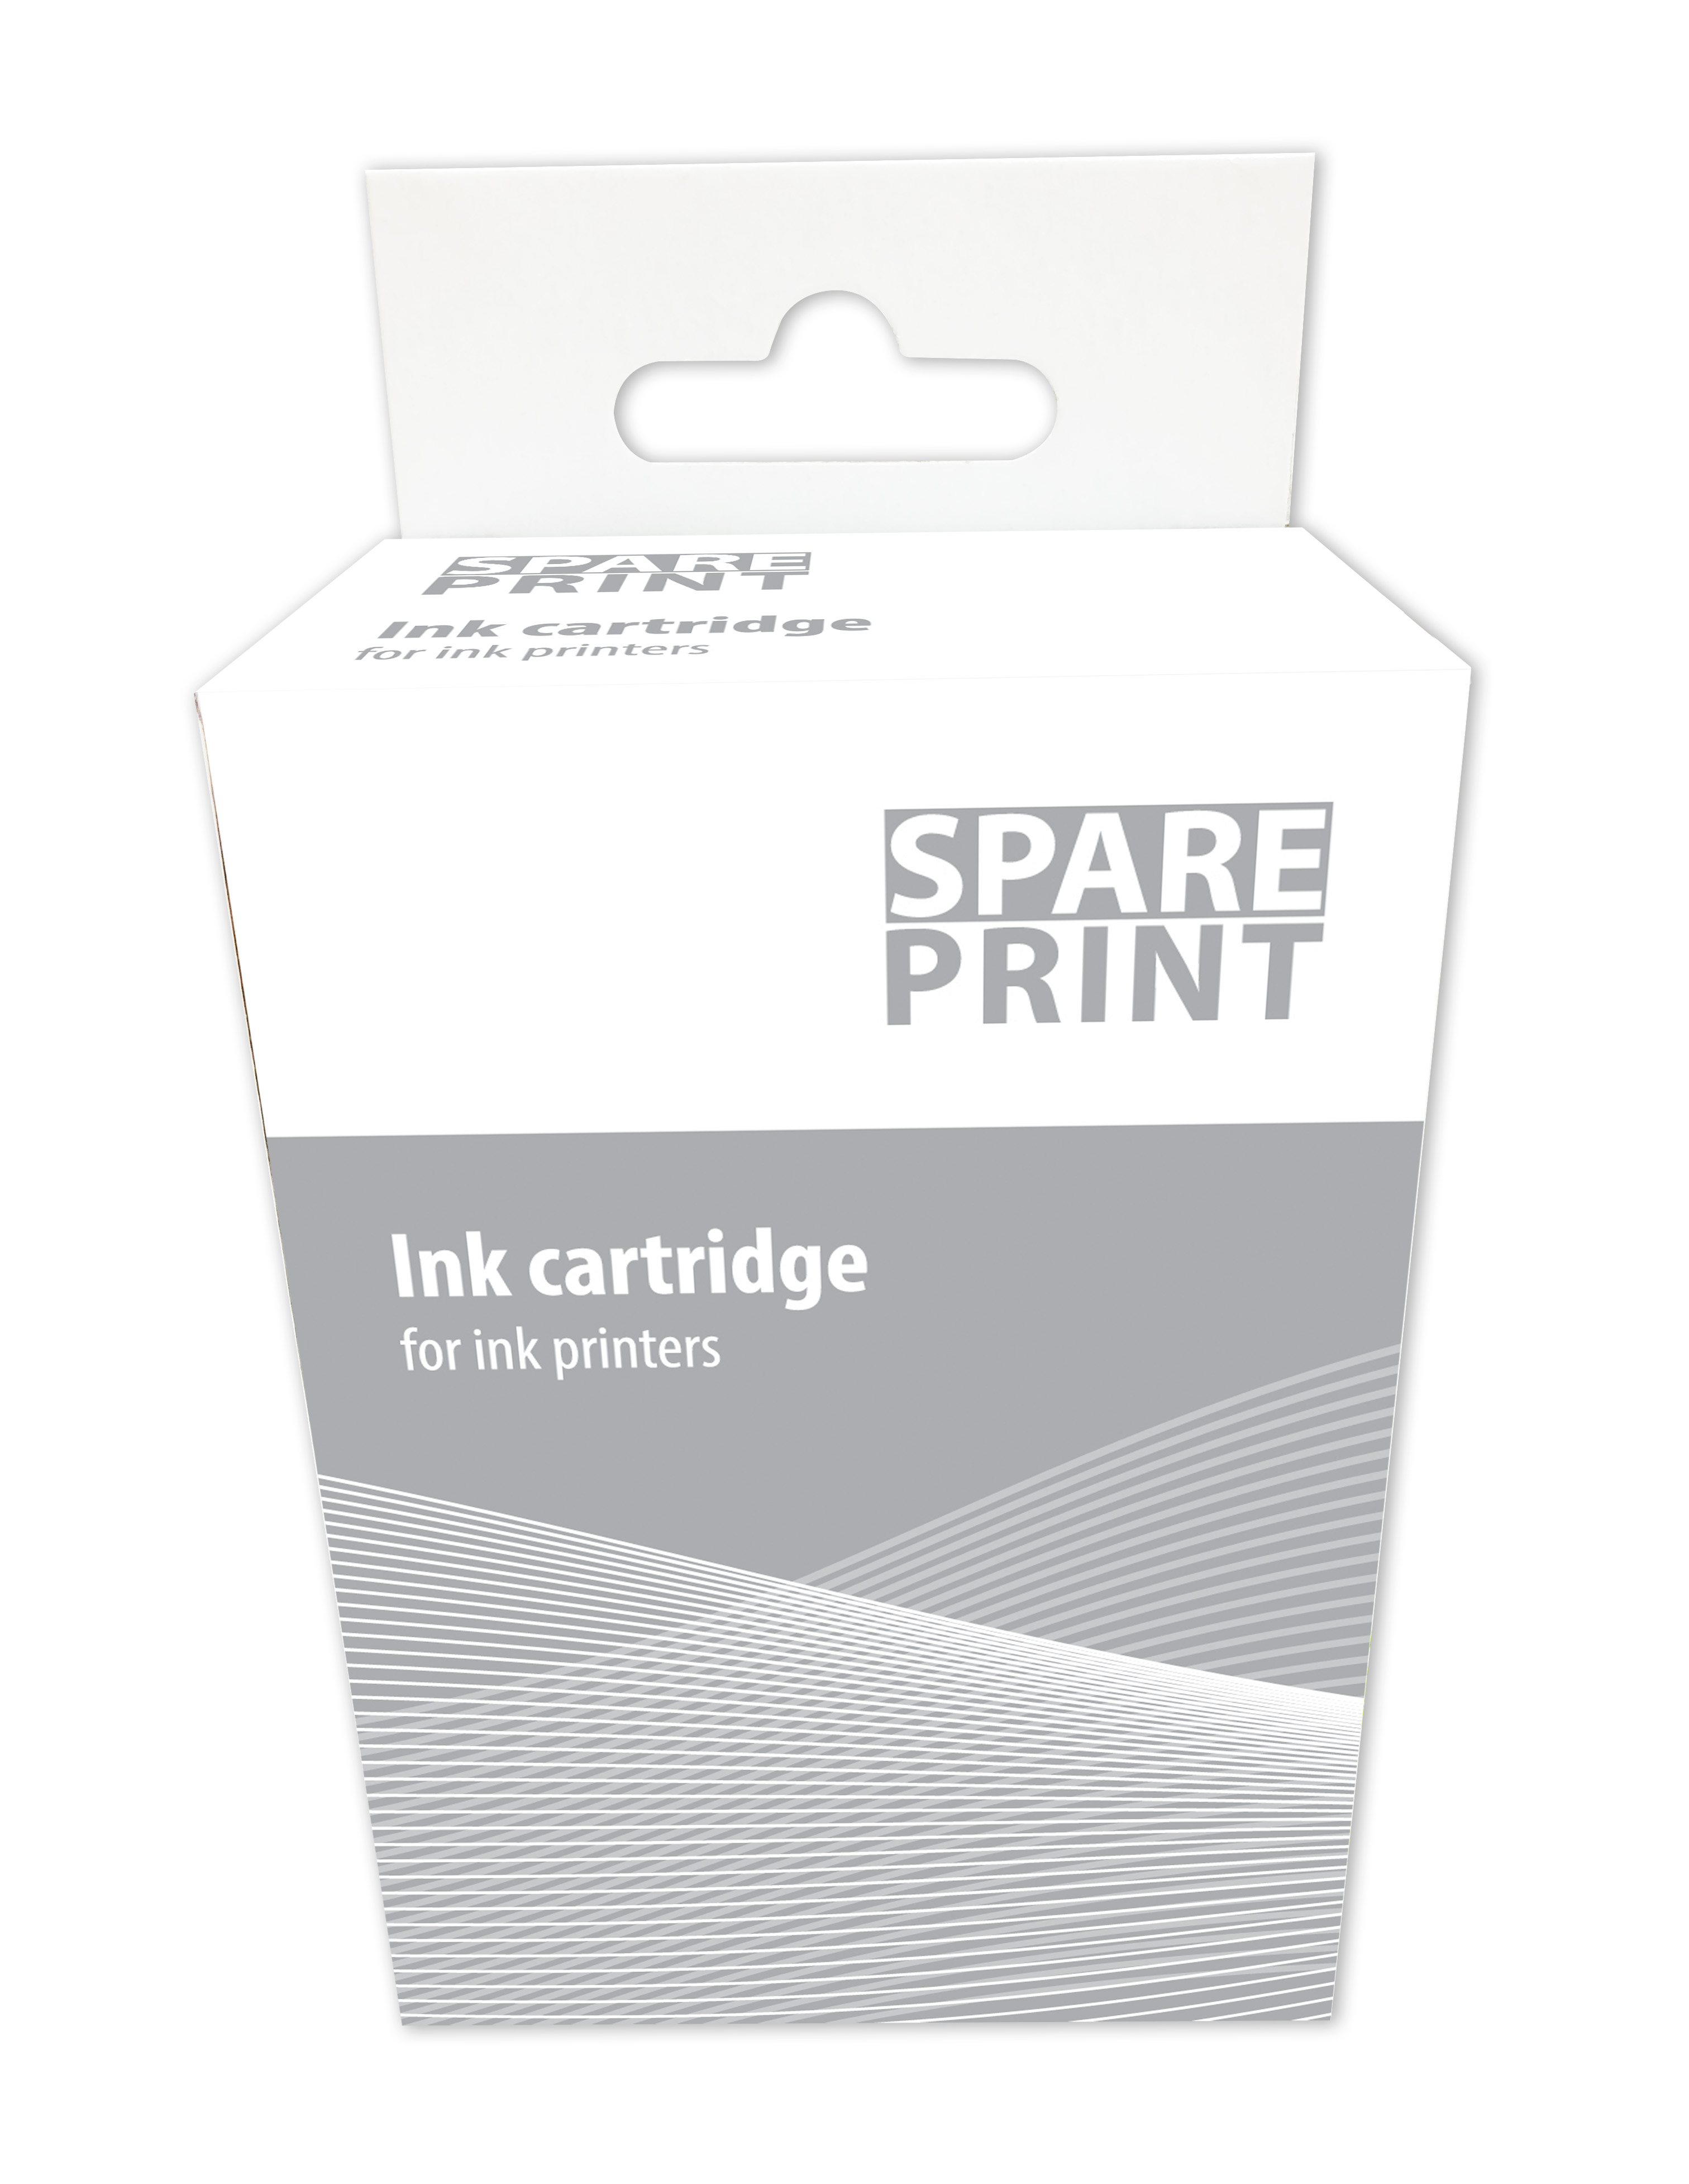 SPARE PRINT kompatibilní cartridge PG-560XL Black pro tiskárny Canon